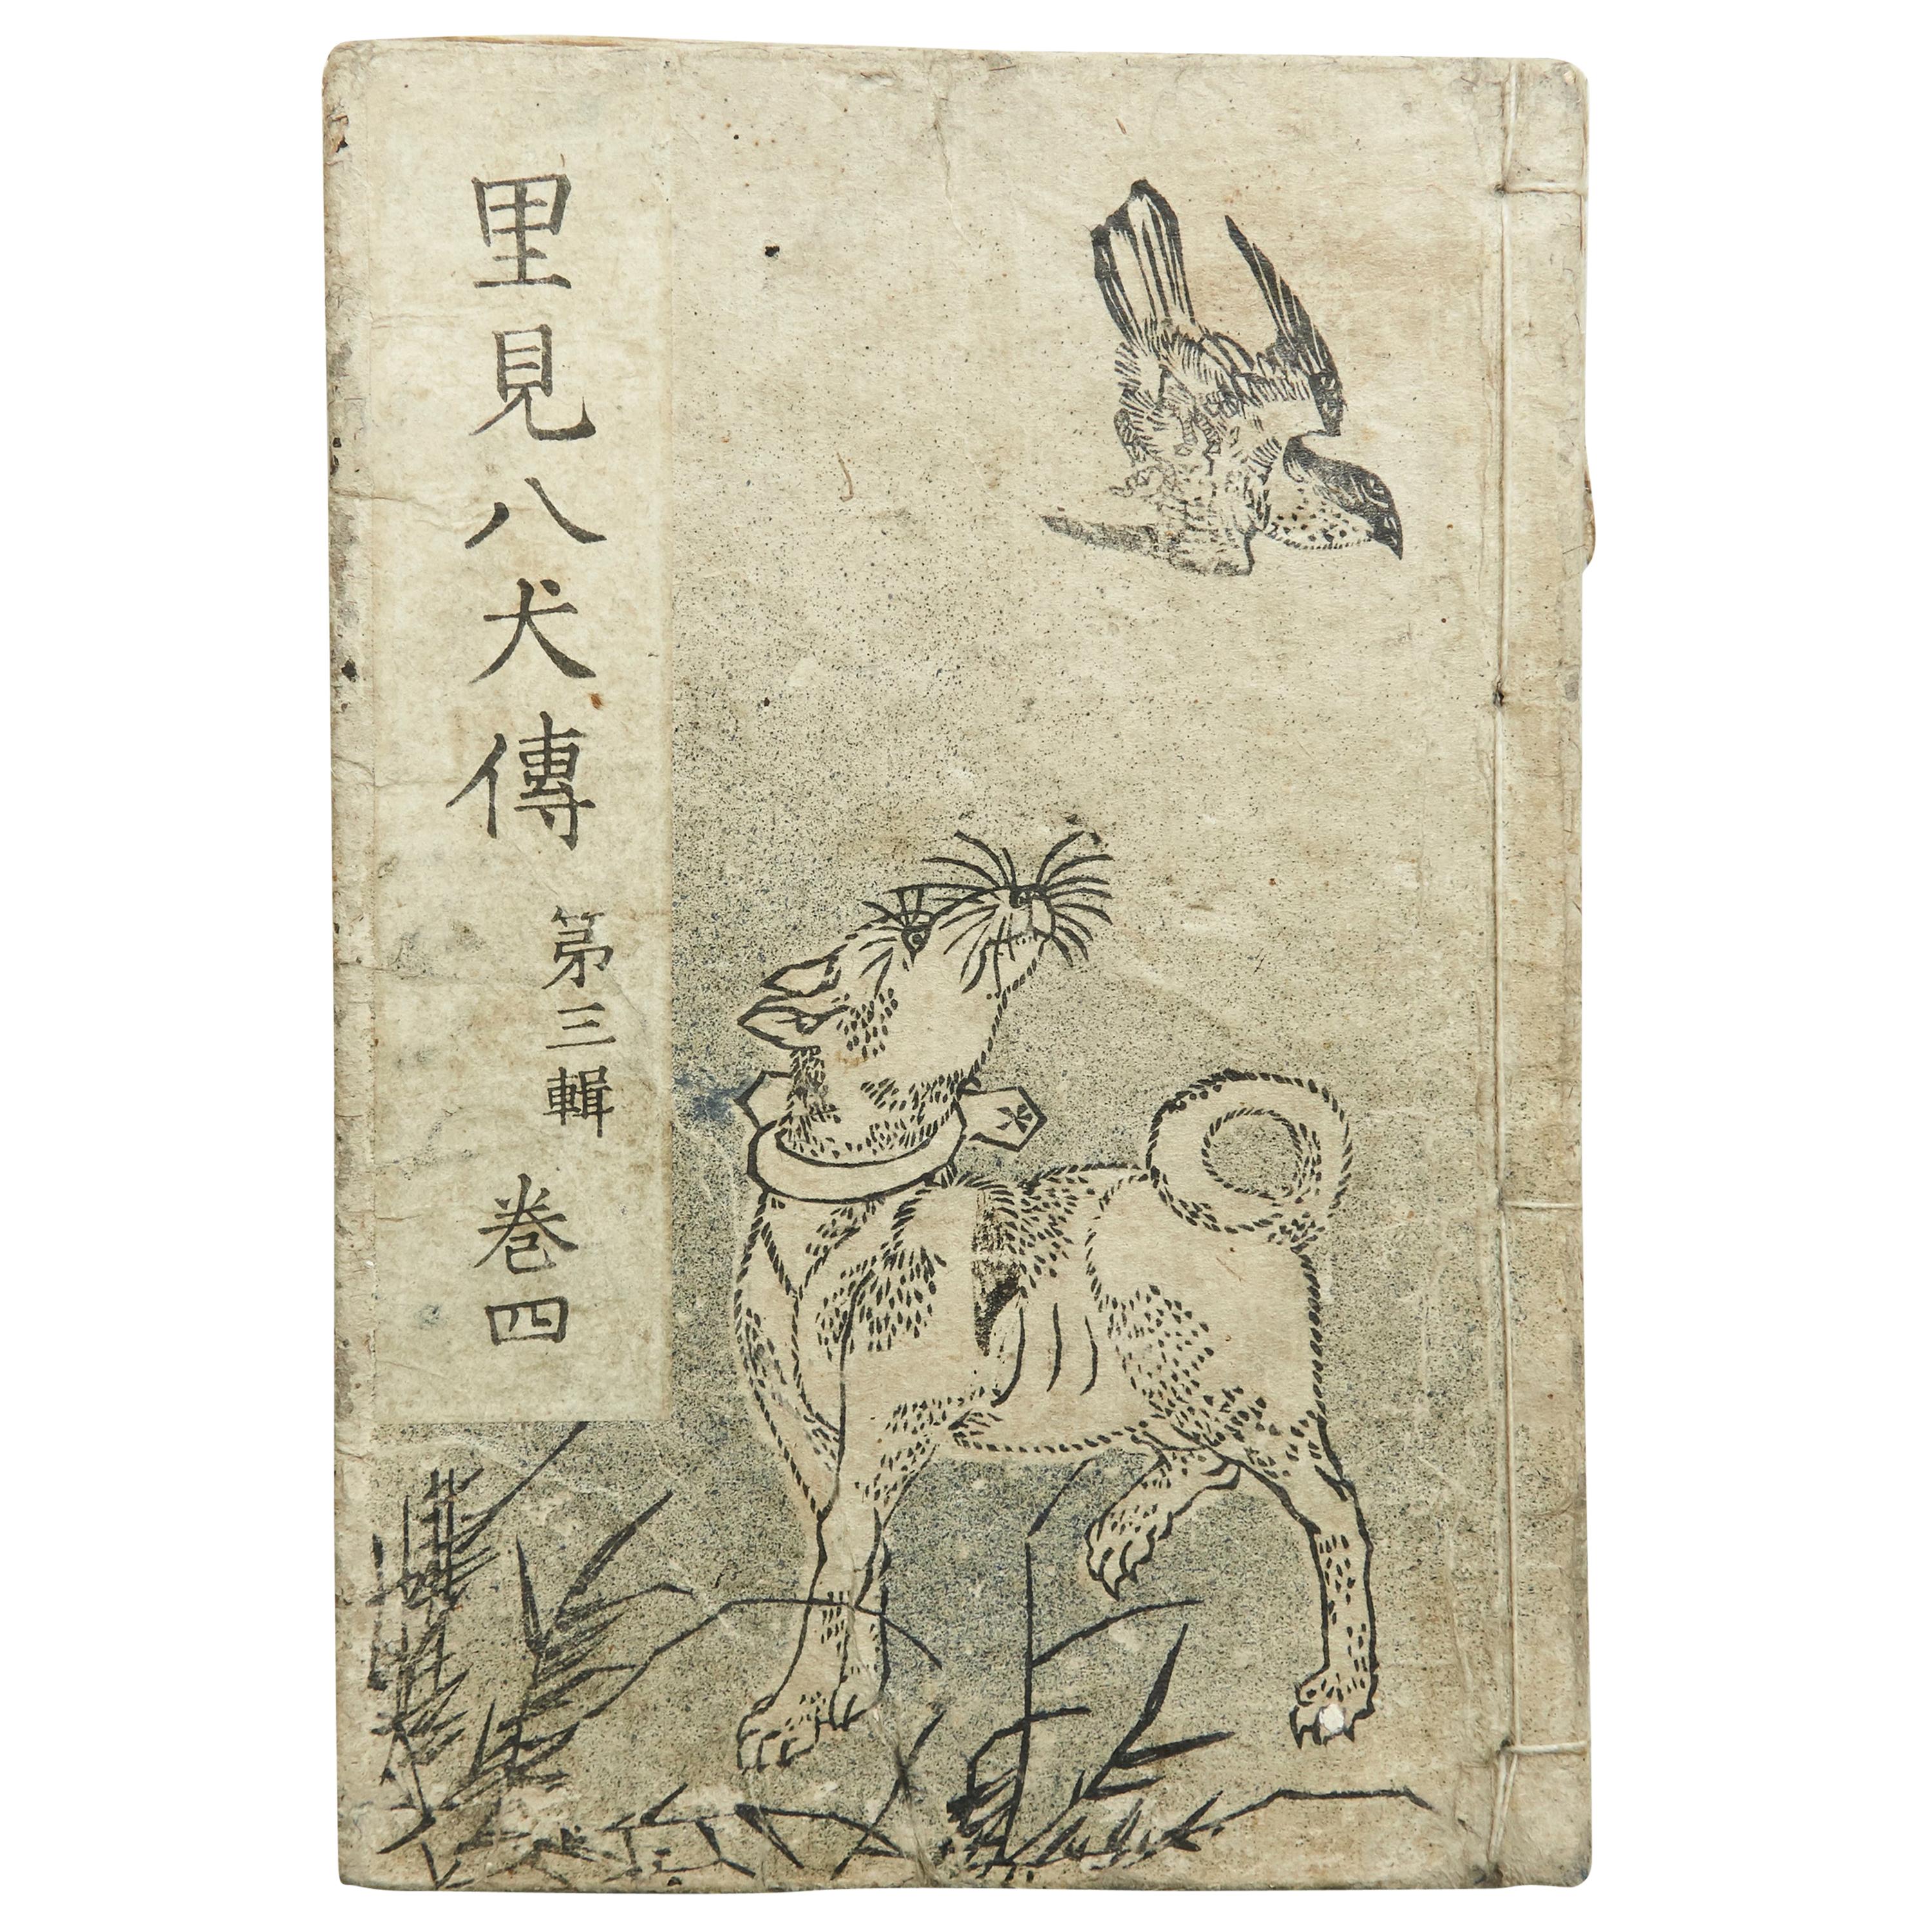 Antique Japanese Epic Novel Book Edo Period, circa 1819